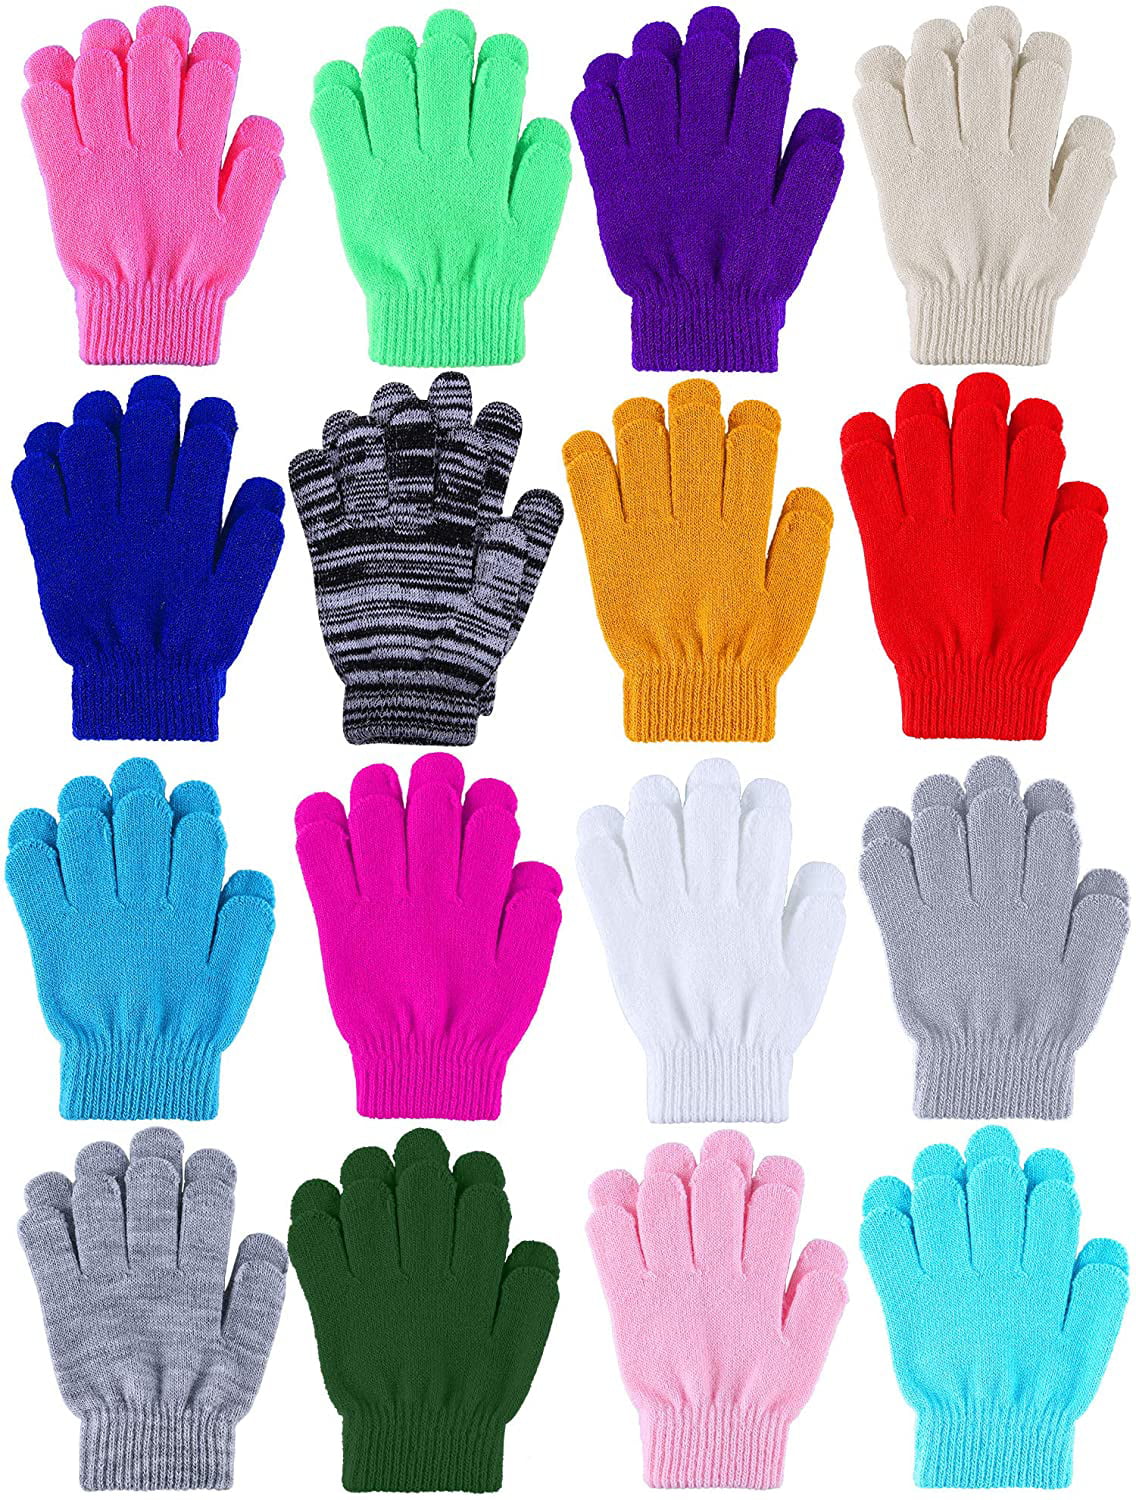 Childrens Magic 2 in 1  Gloves Green & grey  Winter Warm  gloves GL181 